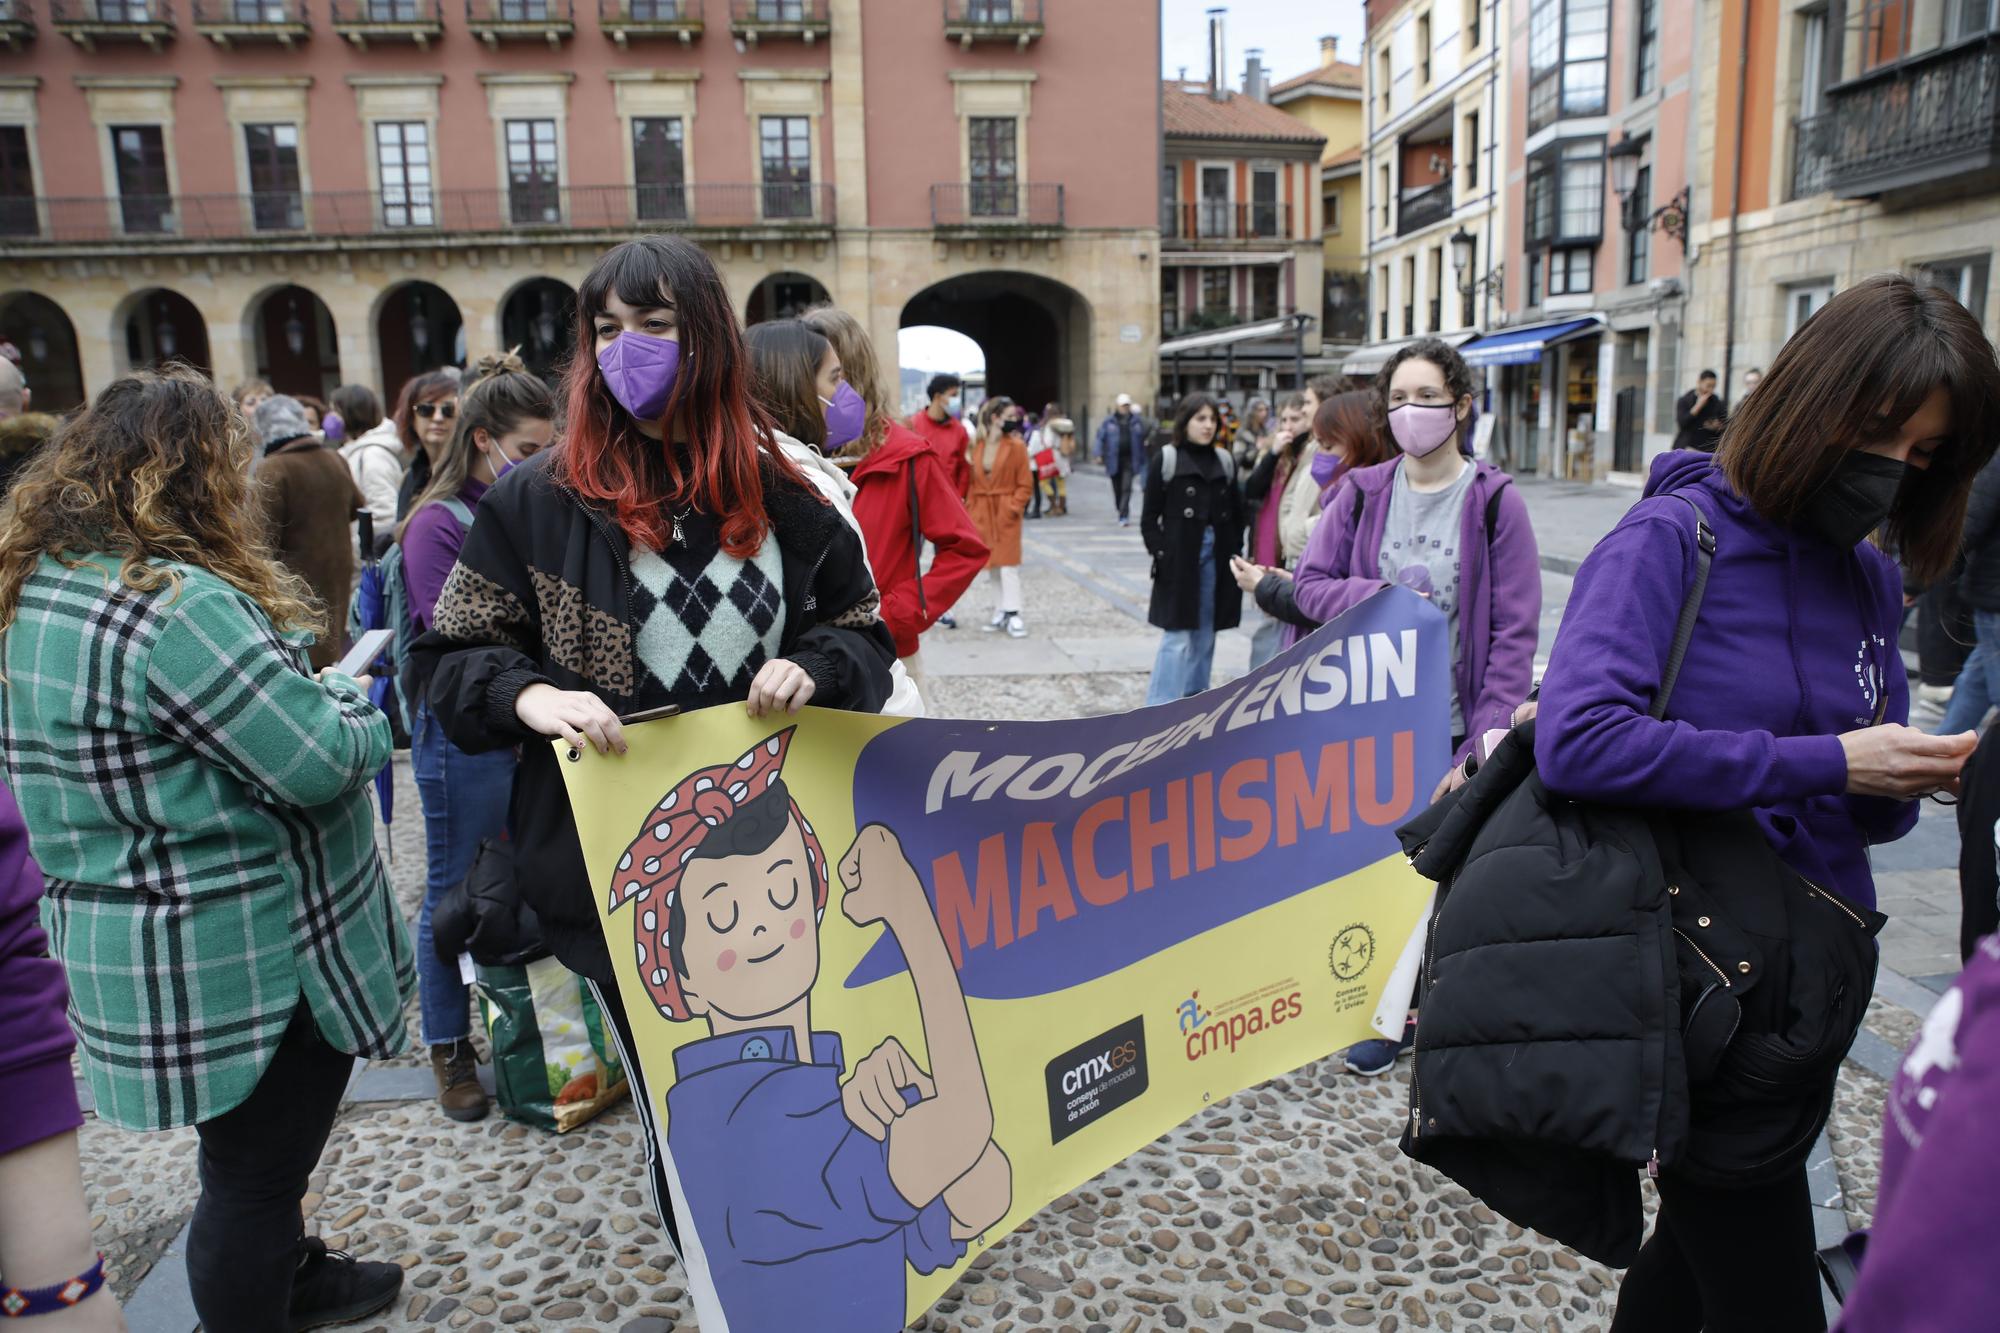 EN IMÁGENES: Así se vivió el Día de la Mujer (8M) en Gijón